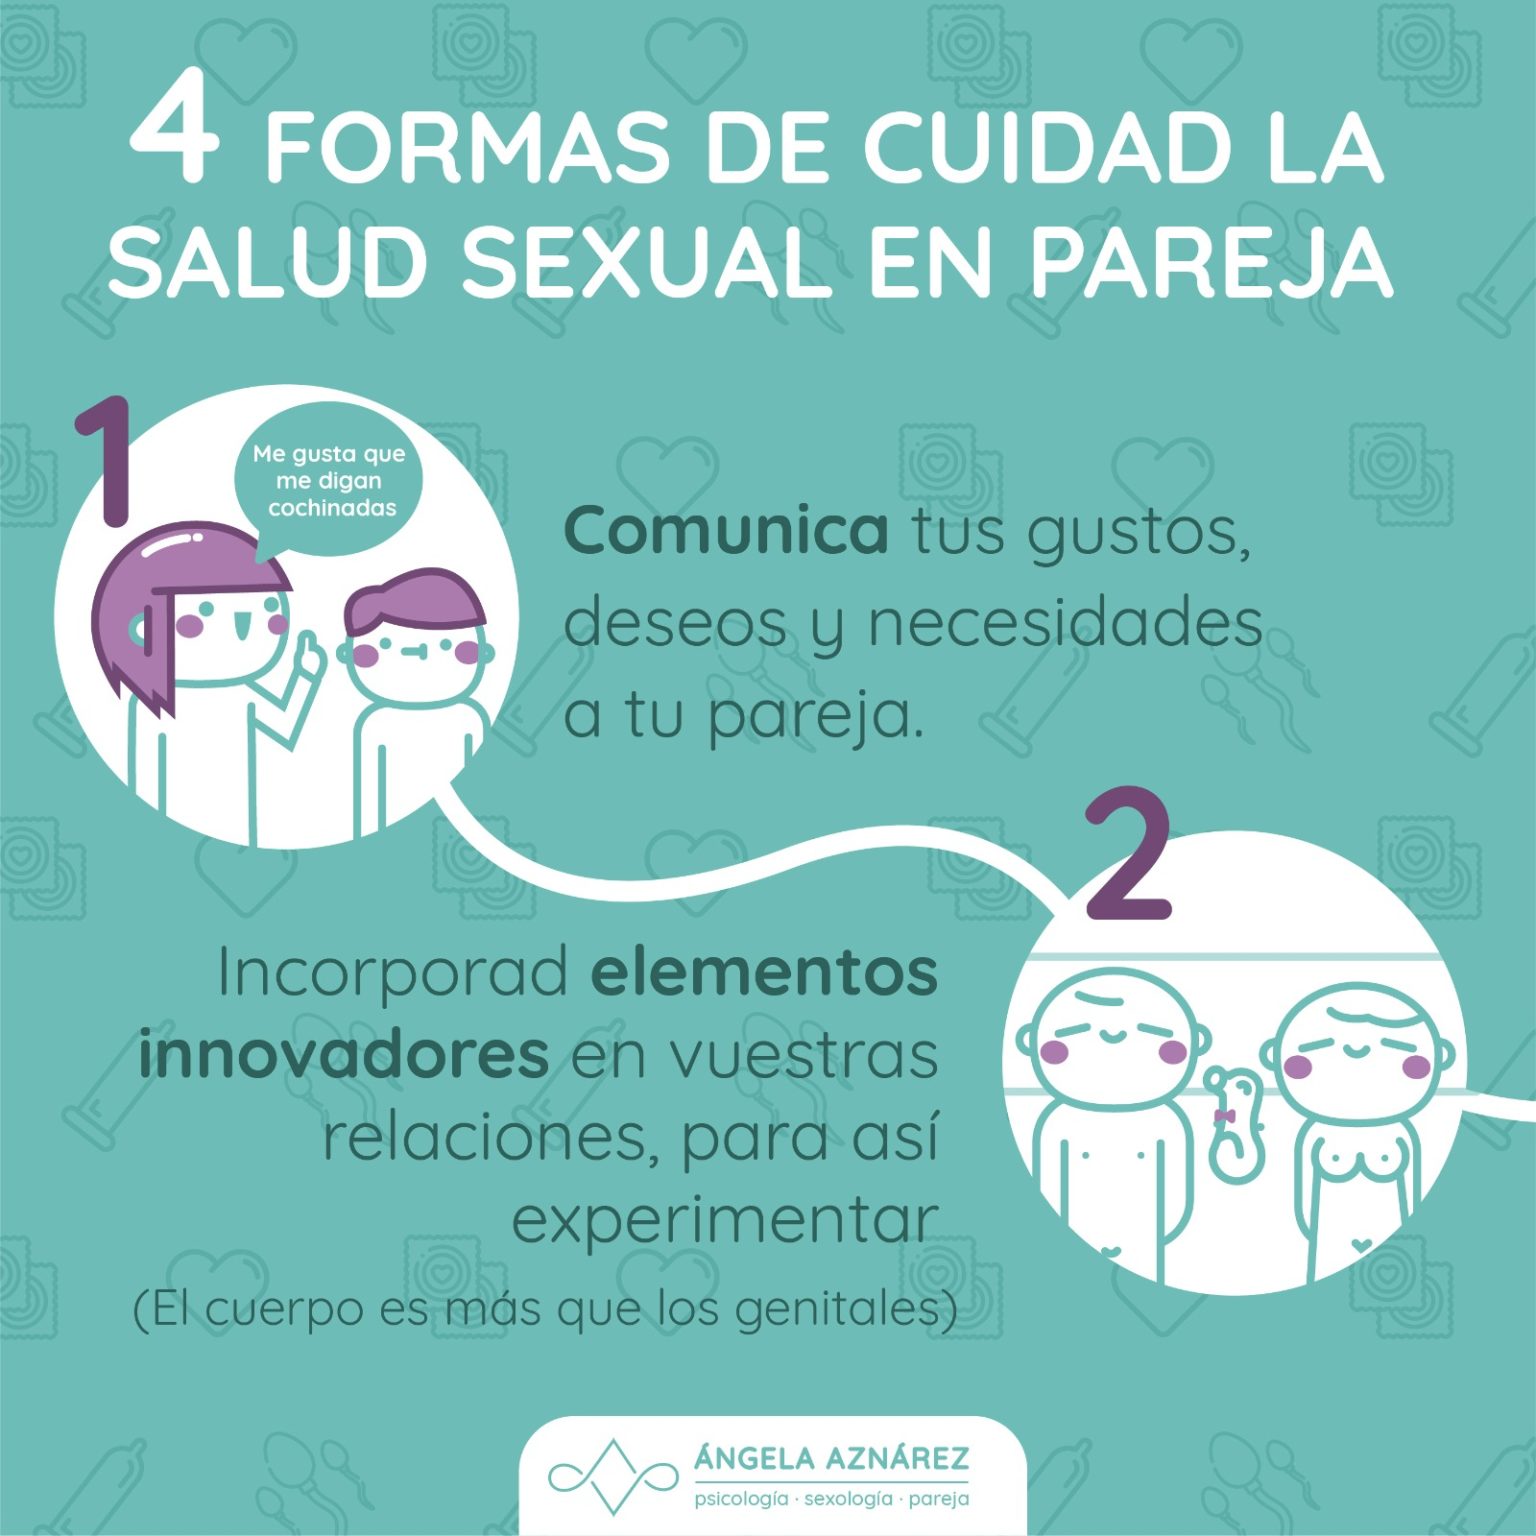 4 Formas De Cuidar La Salud Sexual En Pareja • Ángela Aznárez Sexología Y Psicología 7459